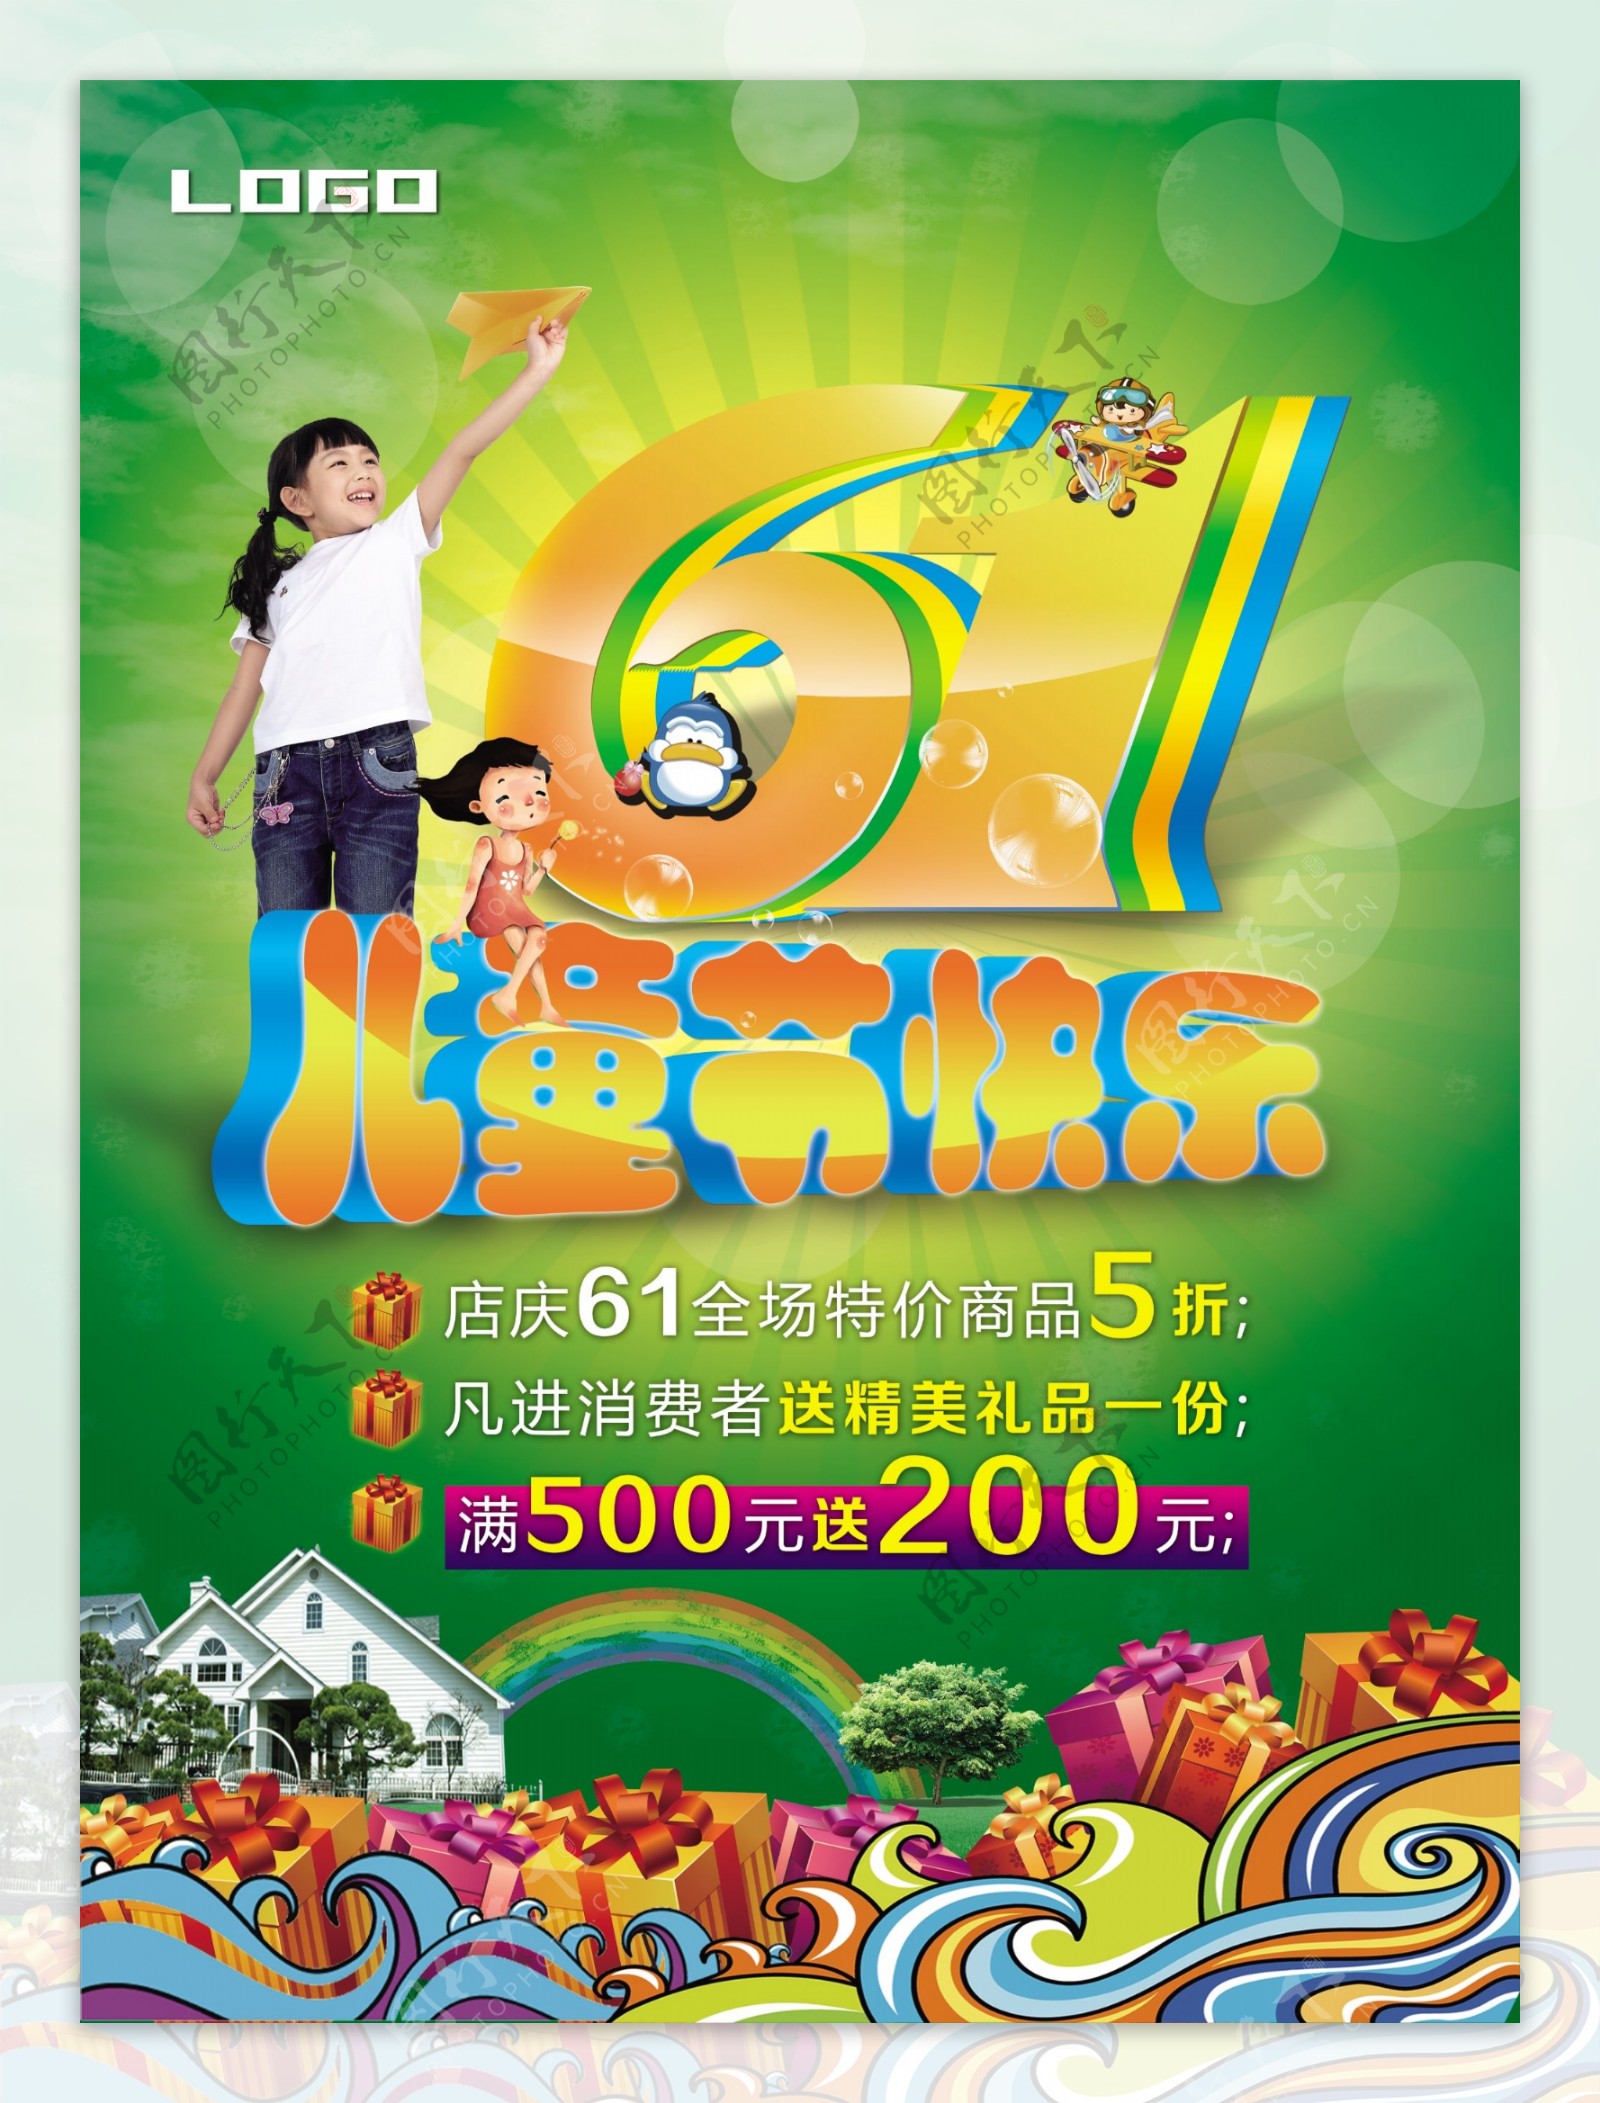 六一儿童节快乐展架海报PSD素材